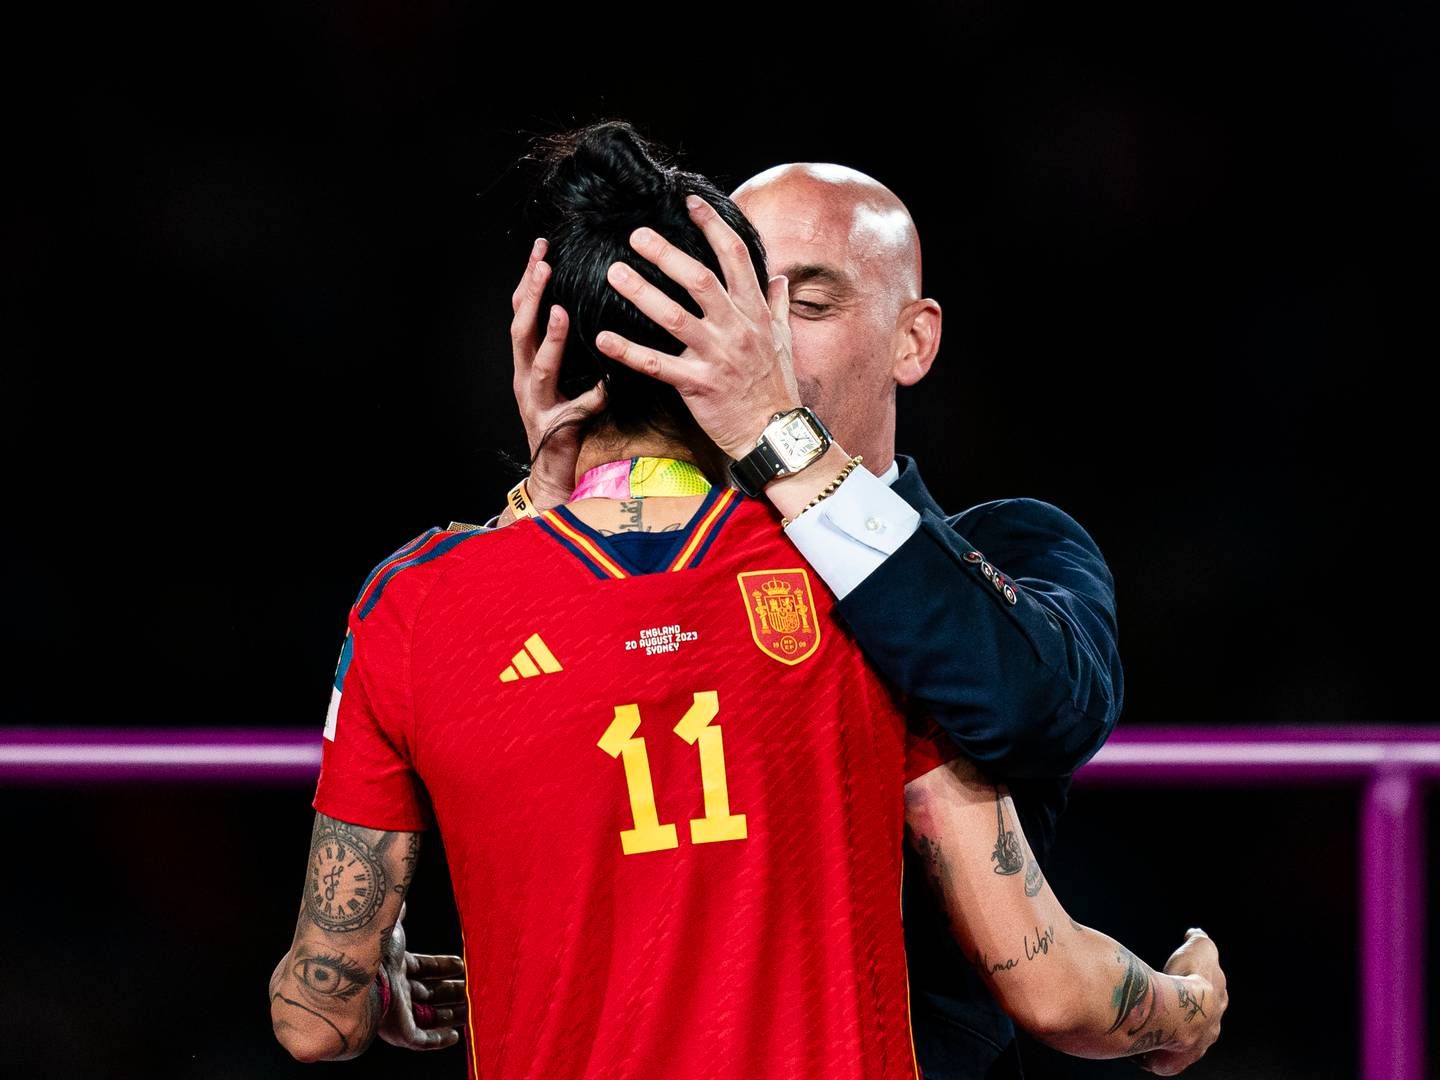 Præsidenten for den spanske fodboldføderation, Luis Rubiales, kysser spilleren Jennifer Hermoso under medaljeceremonien ved FIFA's verdensmesterskab for kvinder i fodbold. | Foto: Getty Images